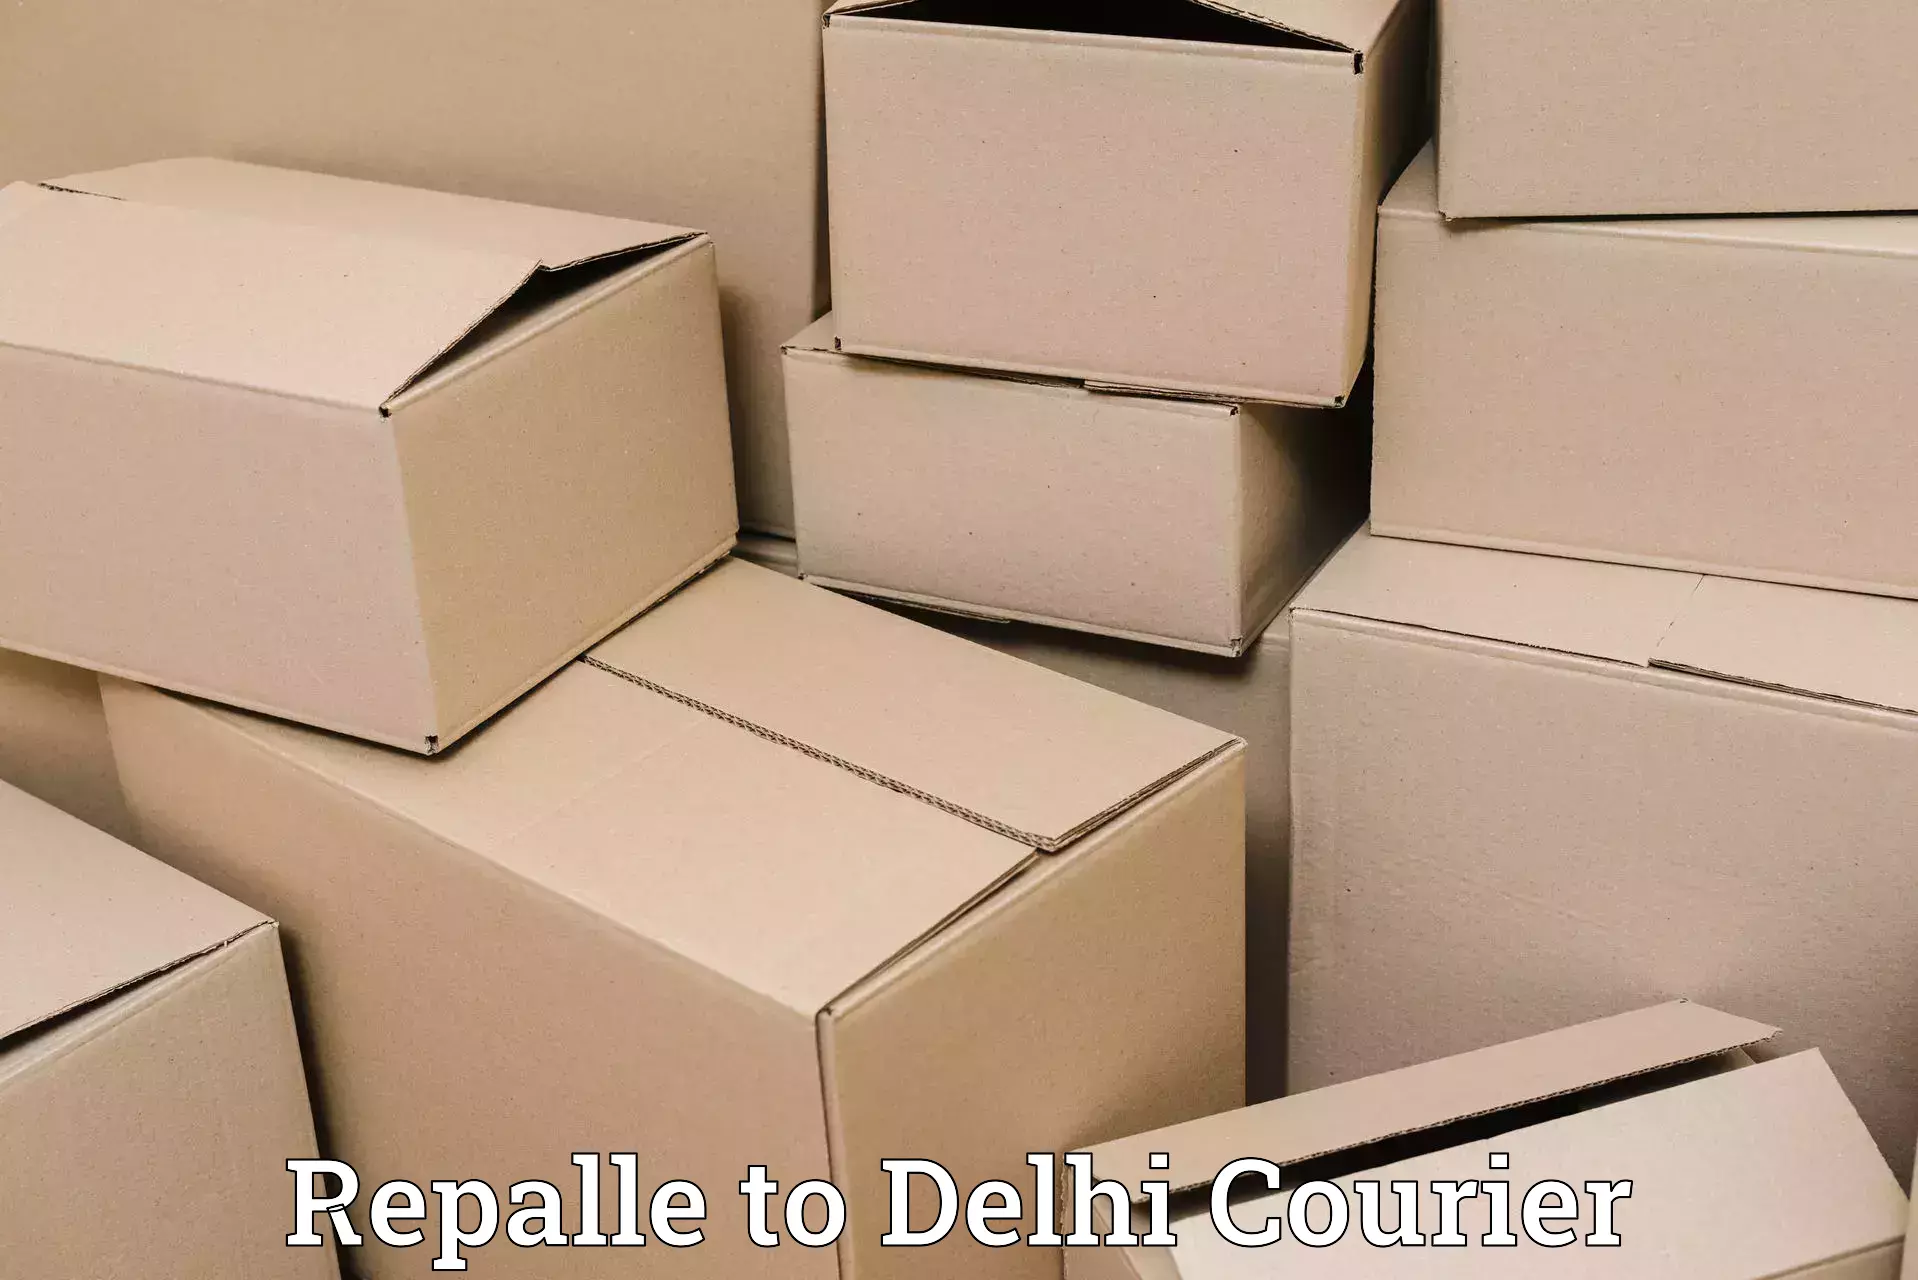 Luggage transfer service Repalle to Delhi